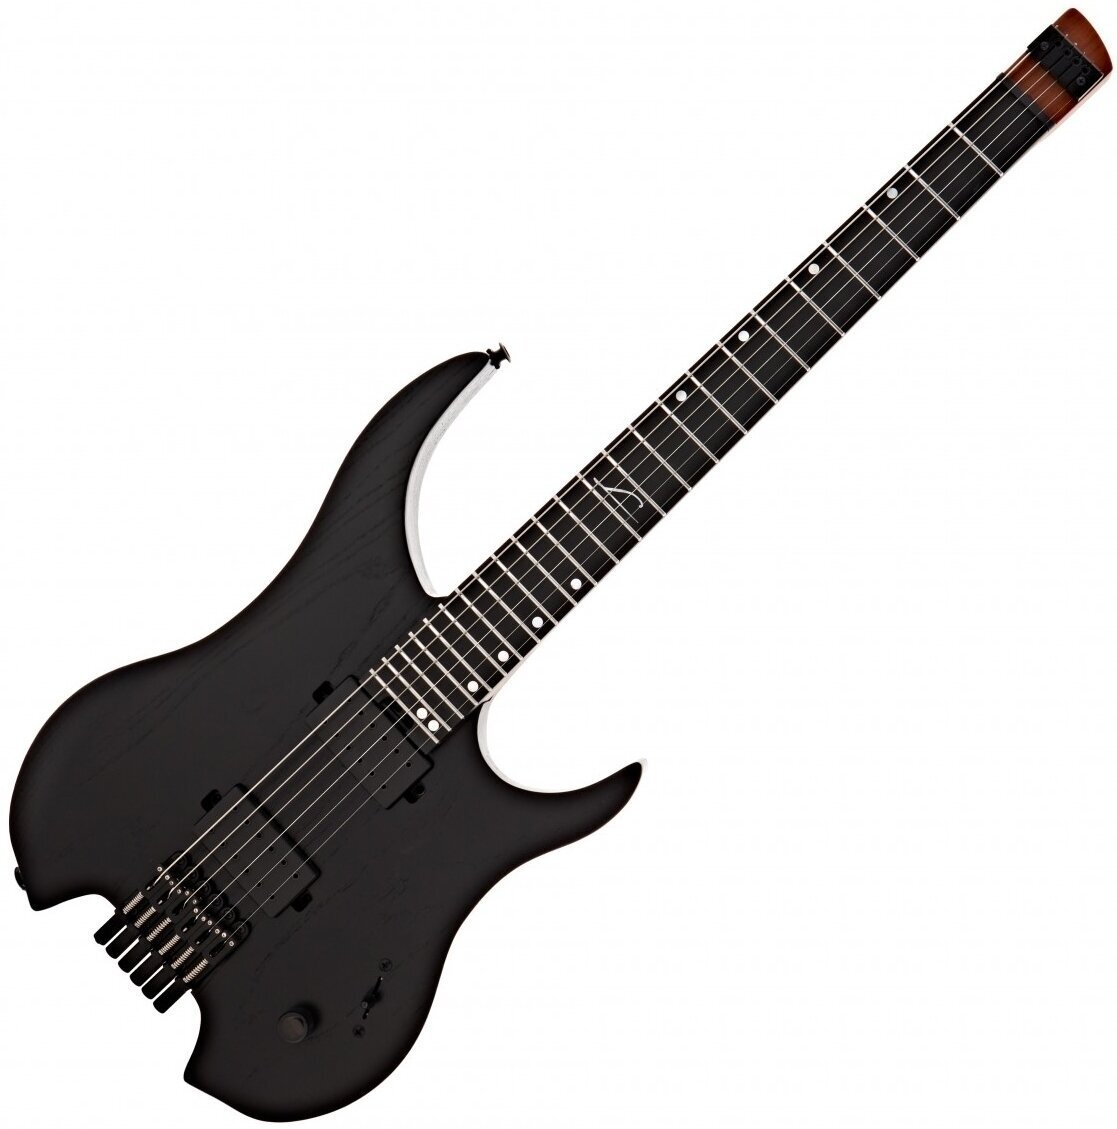 Headless gitara Legator Ghost P 6-String Standard Black Headless gitara (Zánovné)